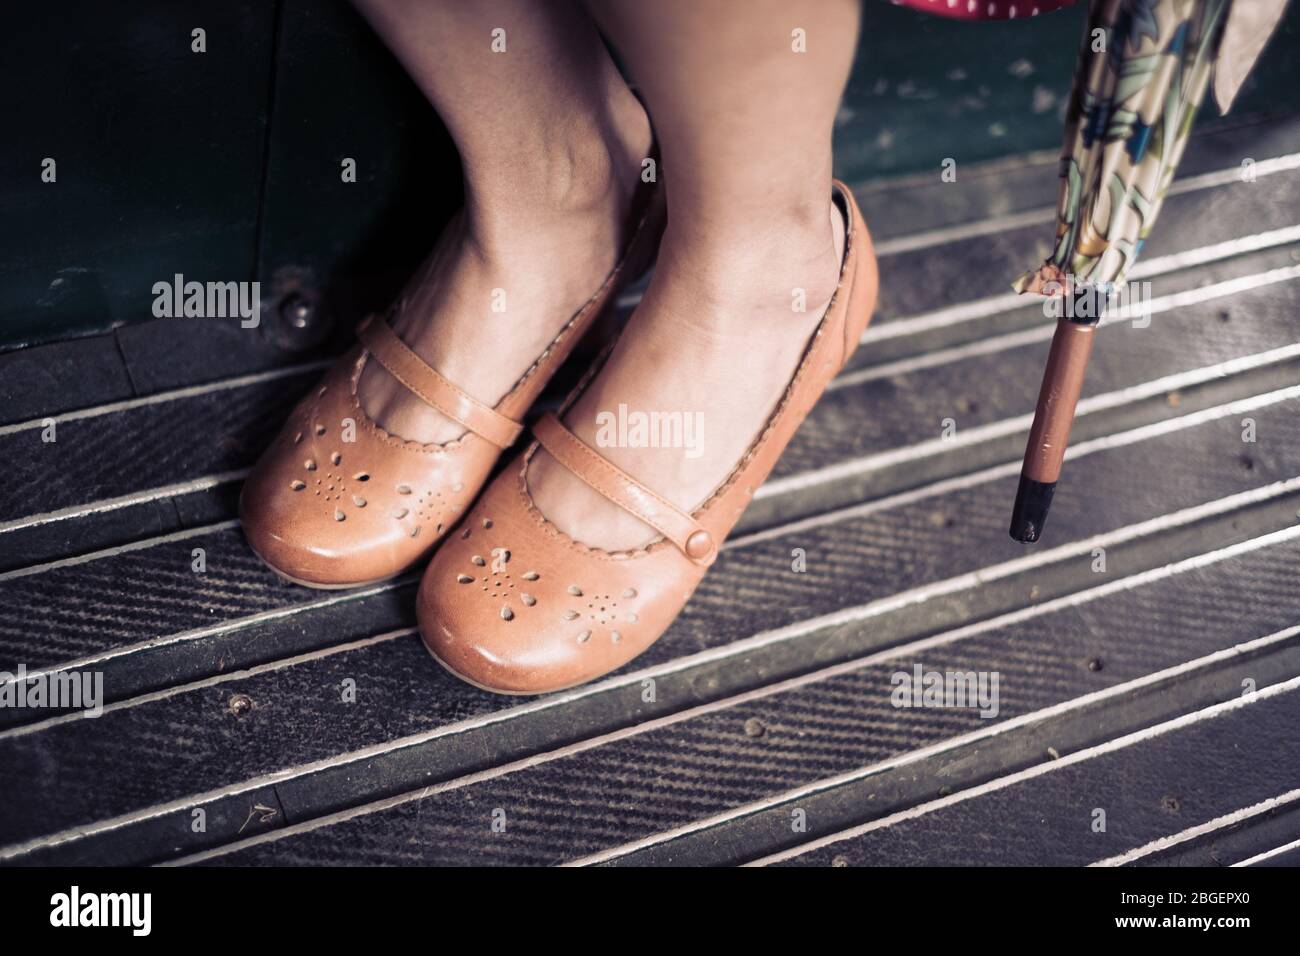 Die Füße einer Frau, die braune Schuhe mit hohem Absatz und einen  Regenschirm trägt Pateley Bridge 1940er Wochenende Stockfotografie - Alamy